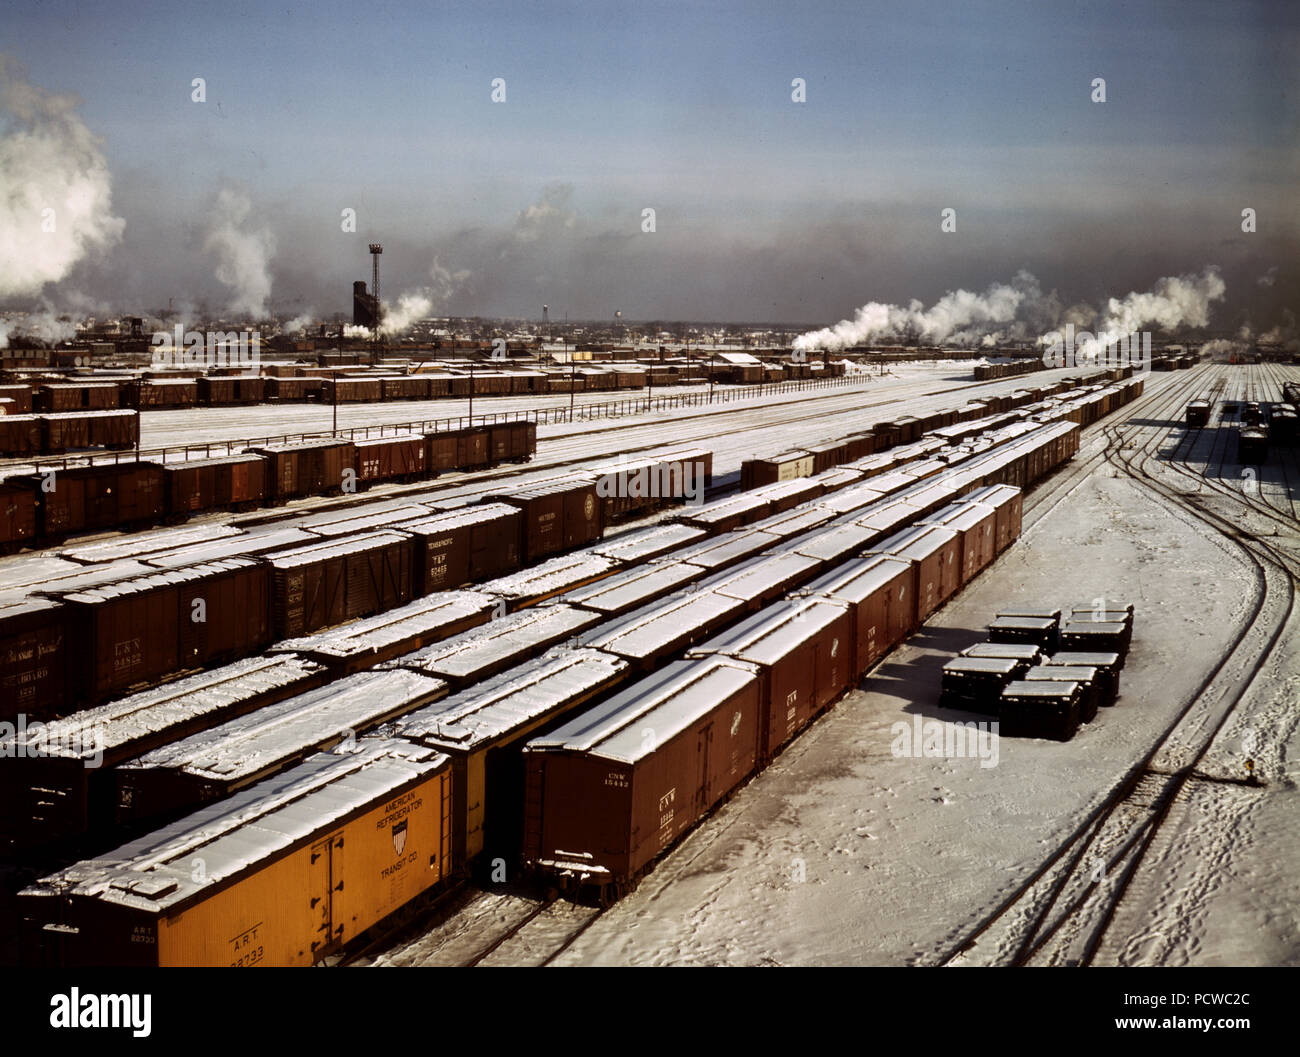 Allgemeine Ansicht von einer Einstufung yard bei C&NW von RR [d. h. Chicago und North Western Railroad] Vorbehalt Yard, Chicago, Illinois, USA, Dezember 1942 Stockfoto